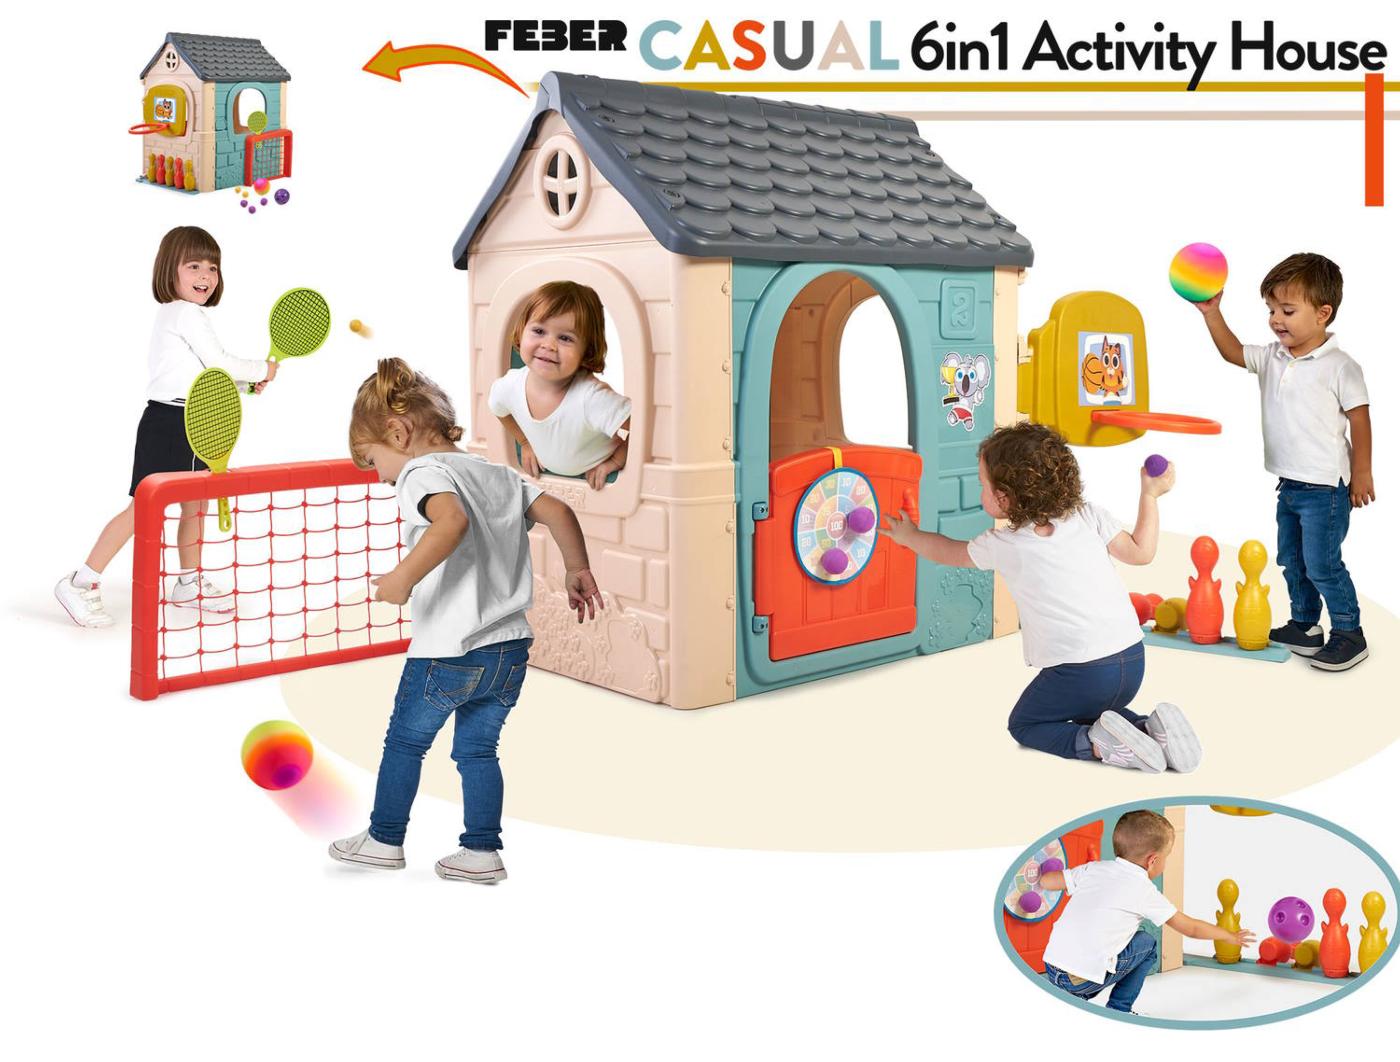 Casinha infantil Feber Casual Multi-Activity House 6 en 1